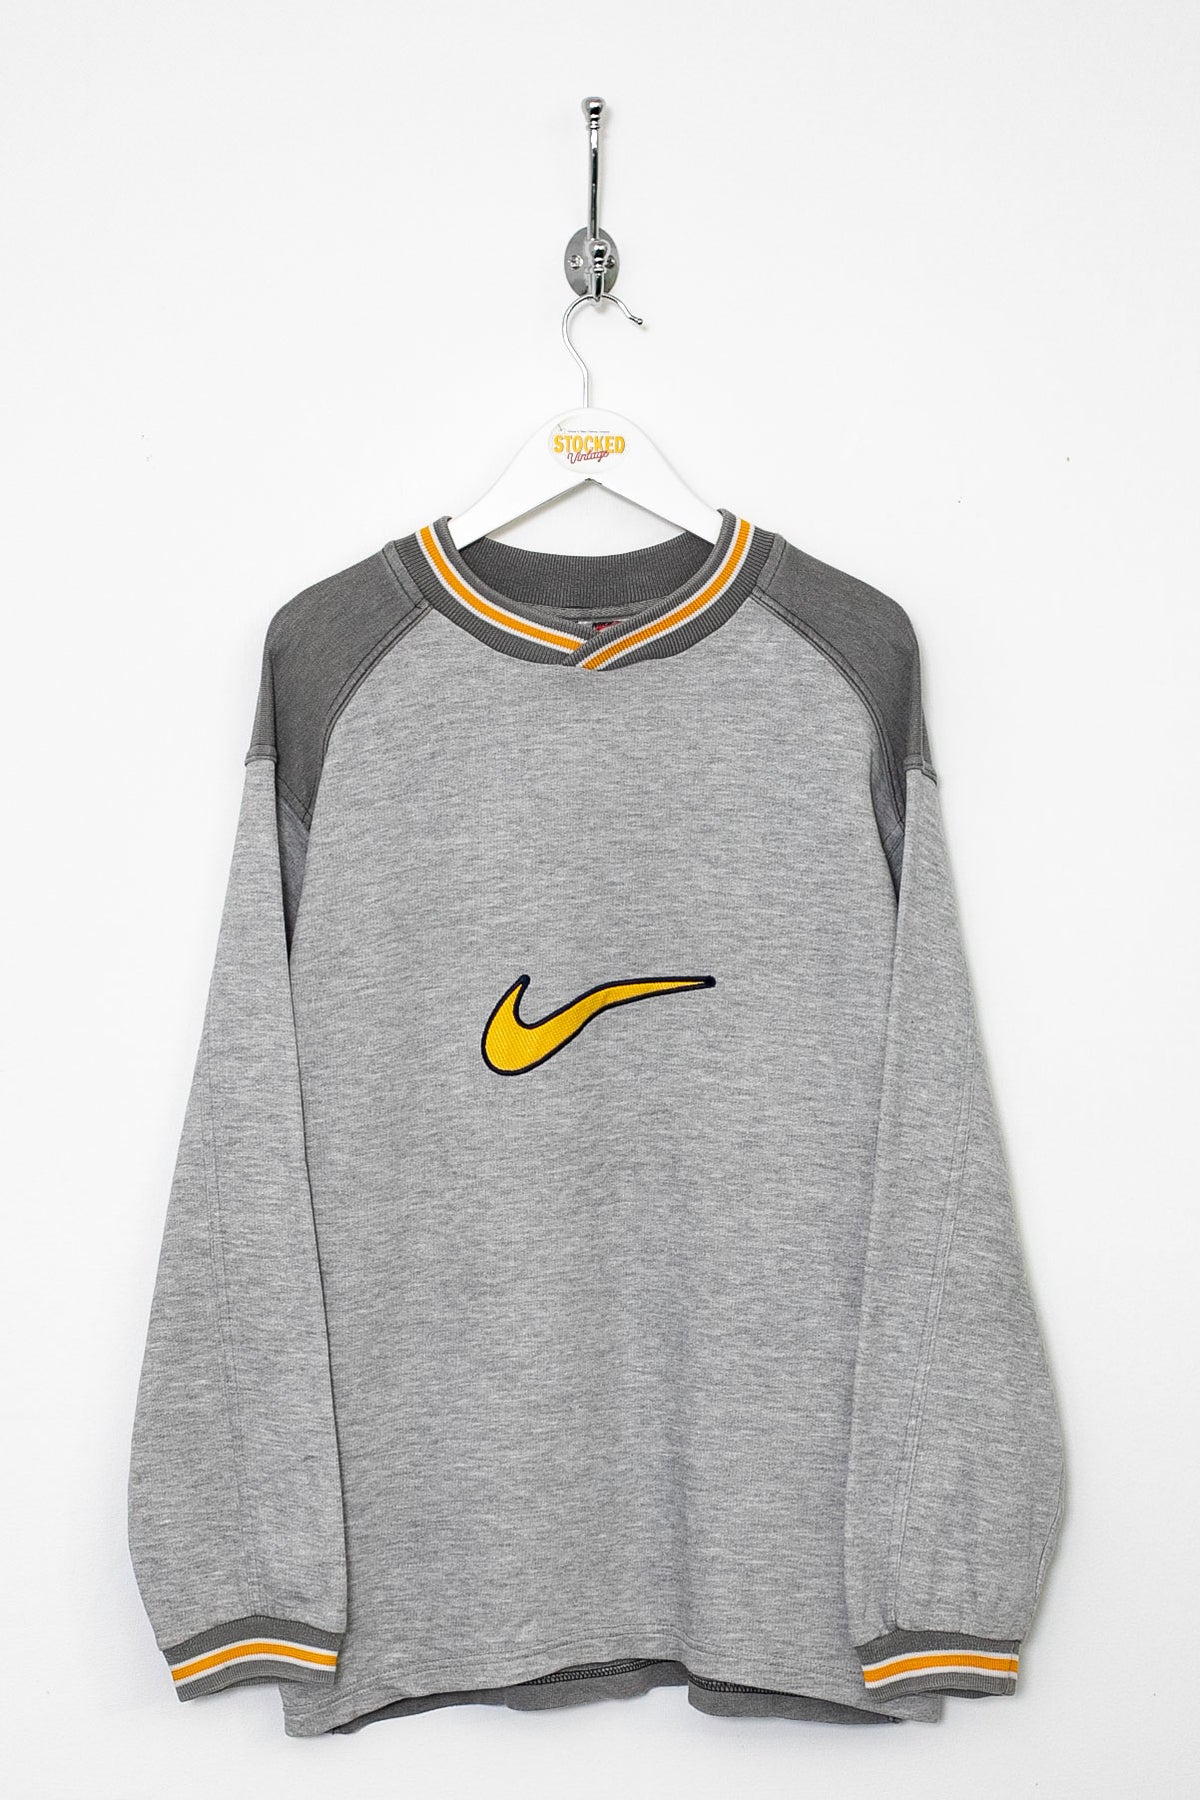 Bootleg Nike Sweatshirt (S)